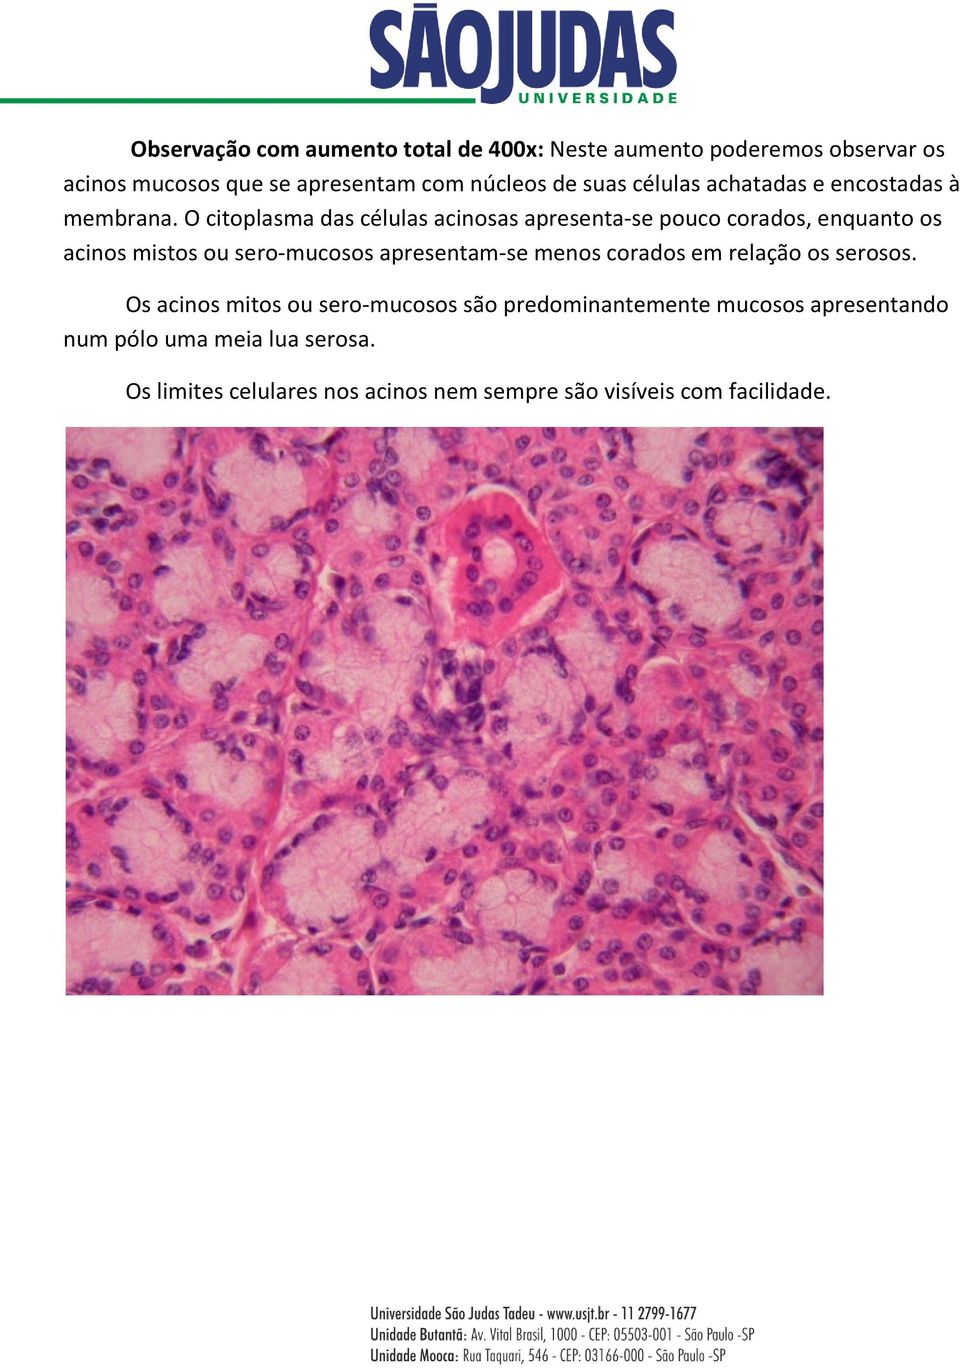 O citoplasma das células acinosas apresenta-se pouco corados, enquanto os acinos mistos ou sero-mucosos apresentam-se menos